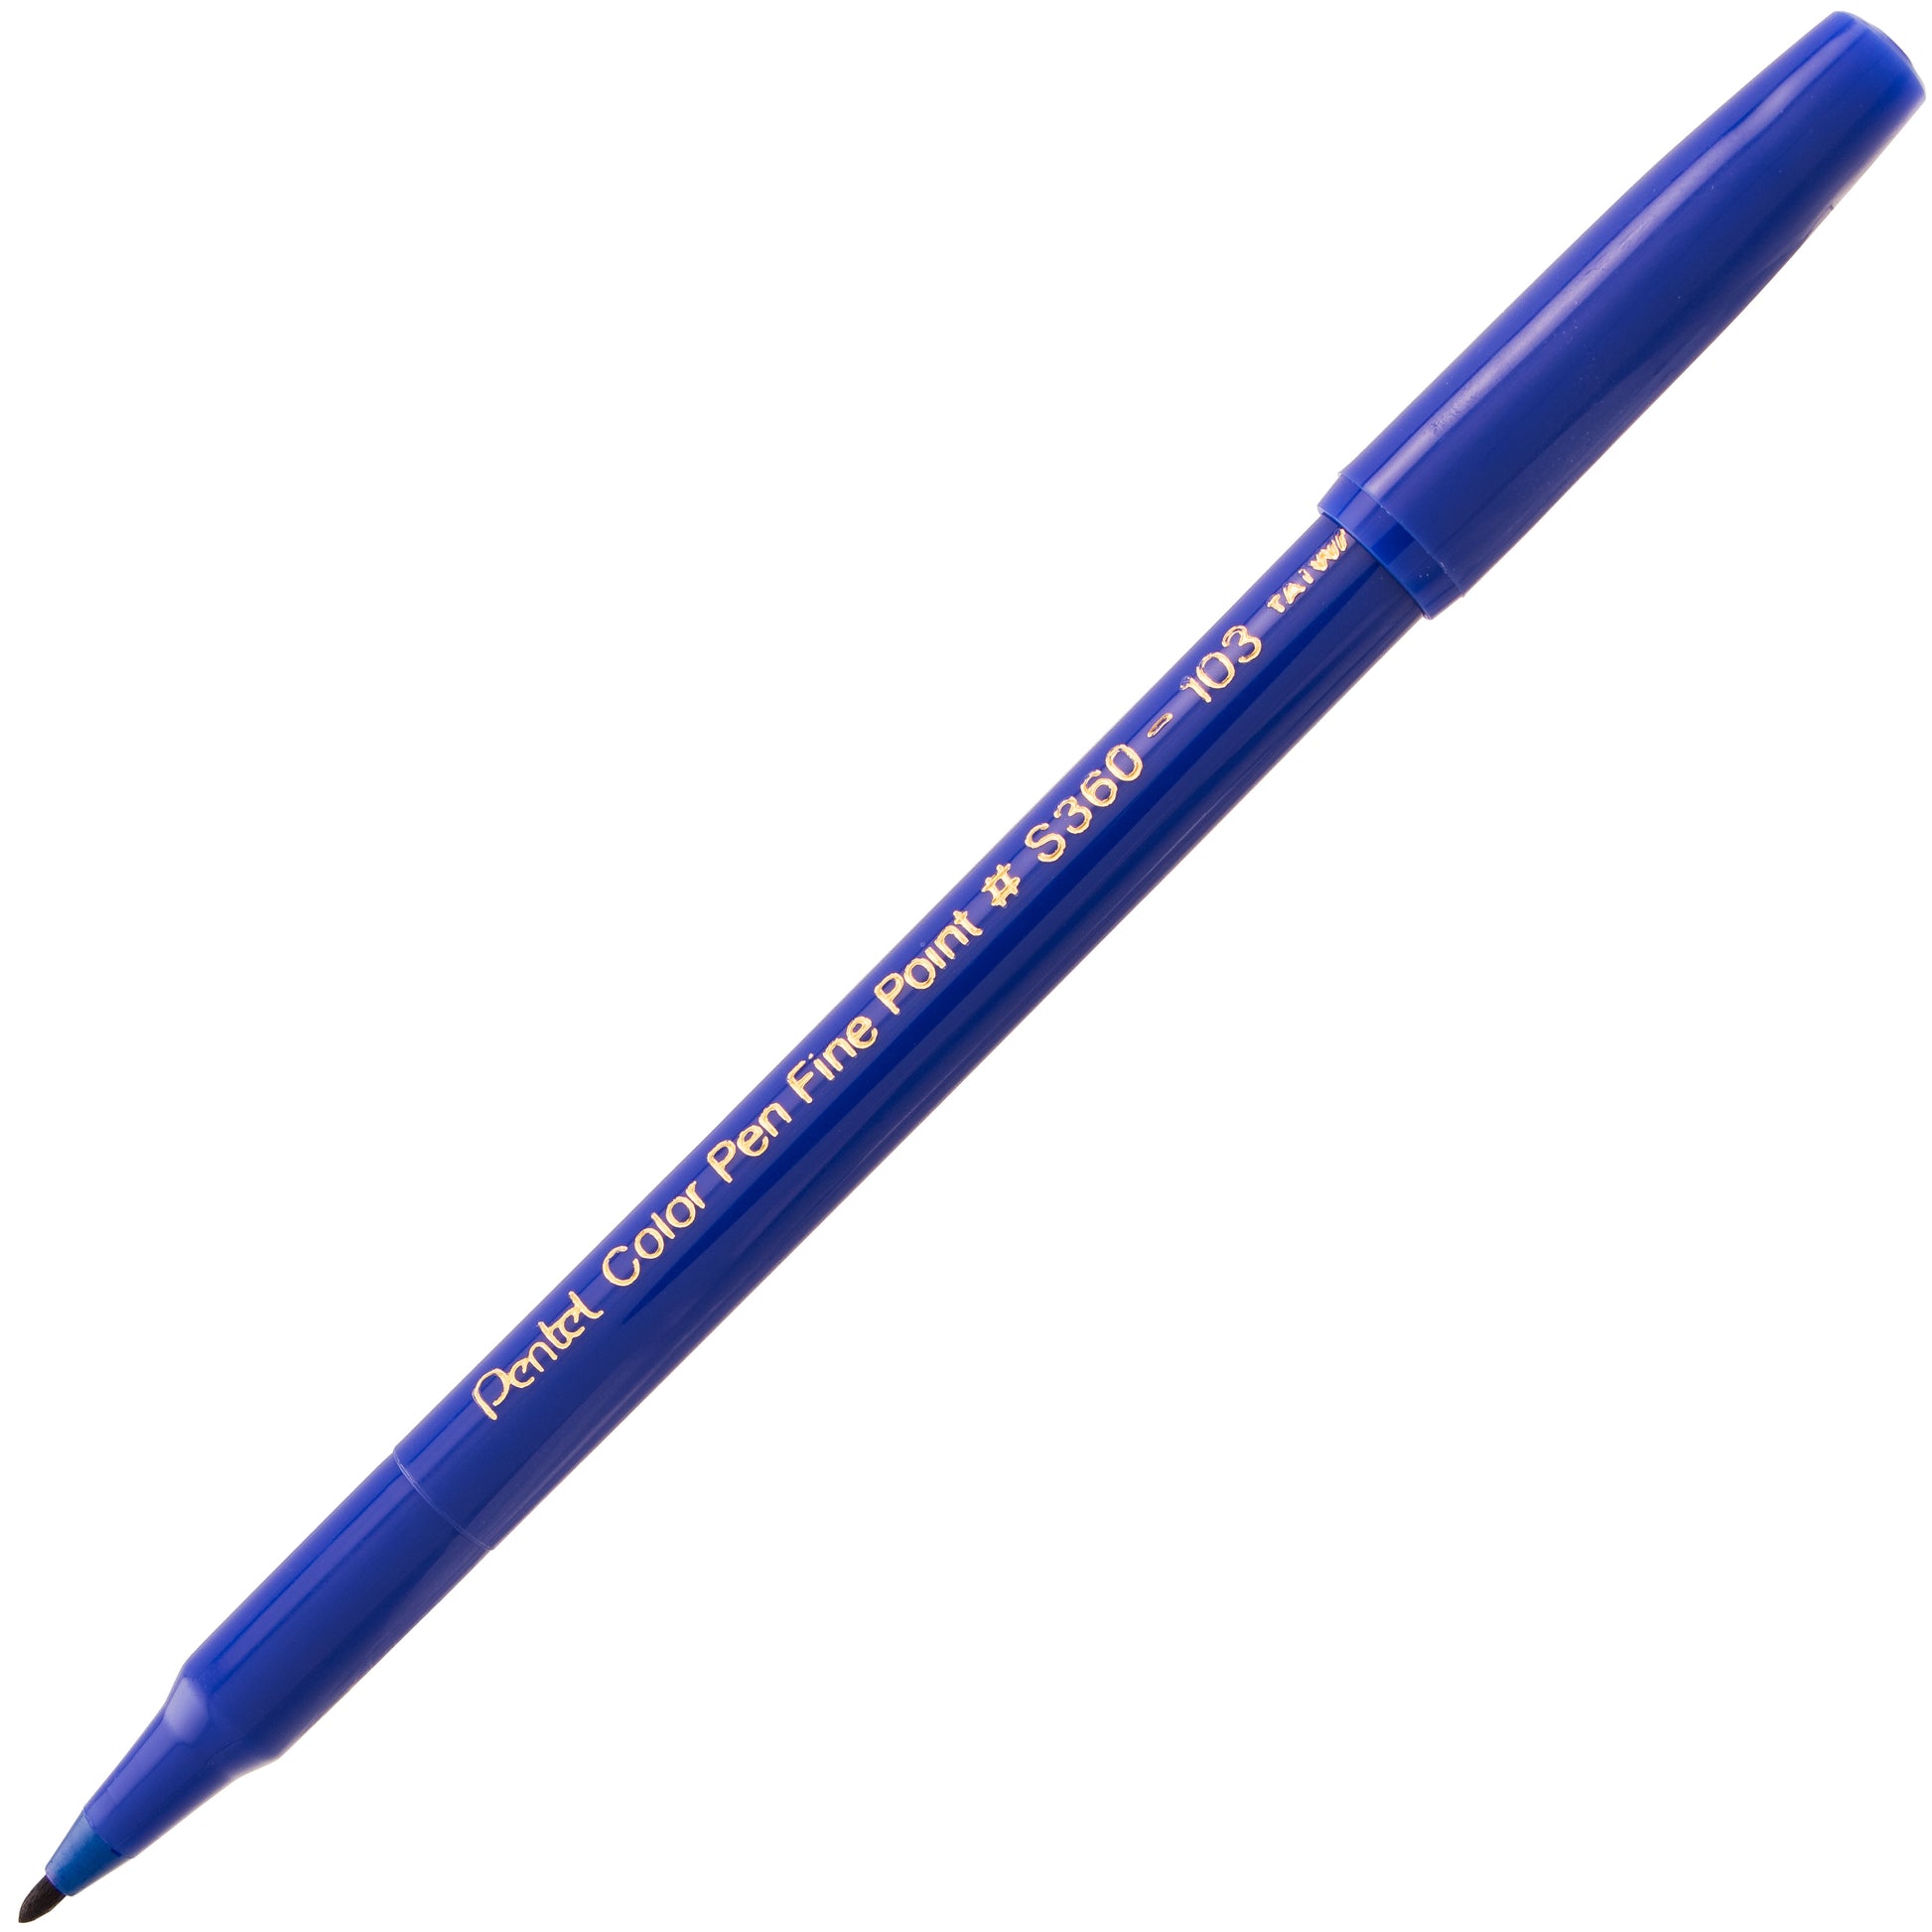 Pentel Color Pen, Set of 6